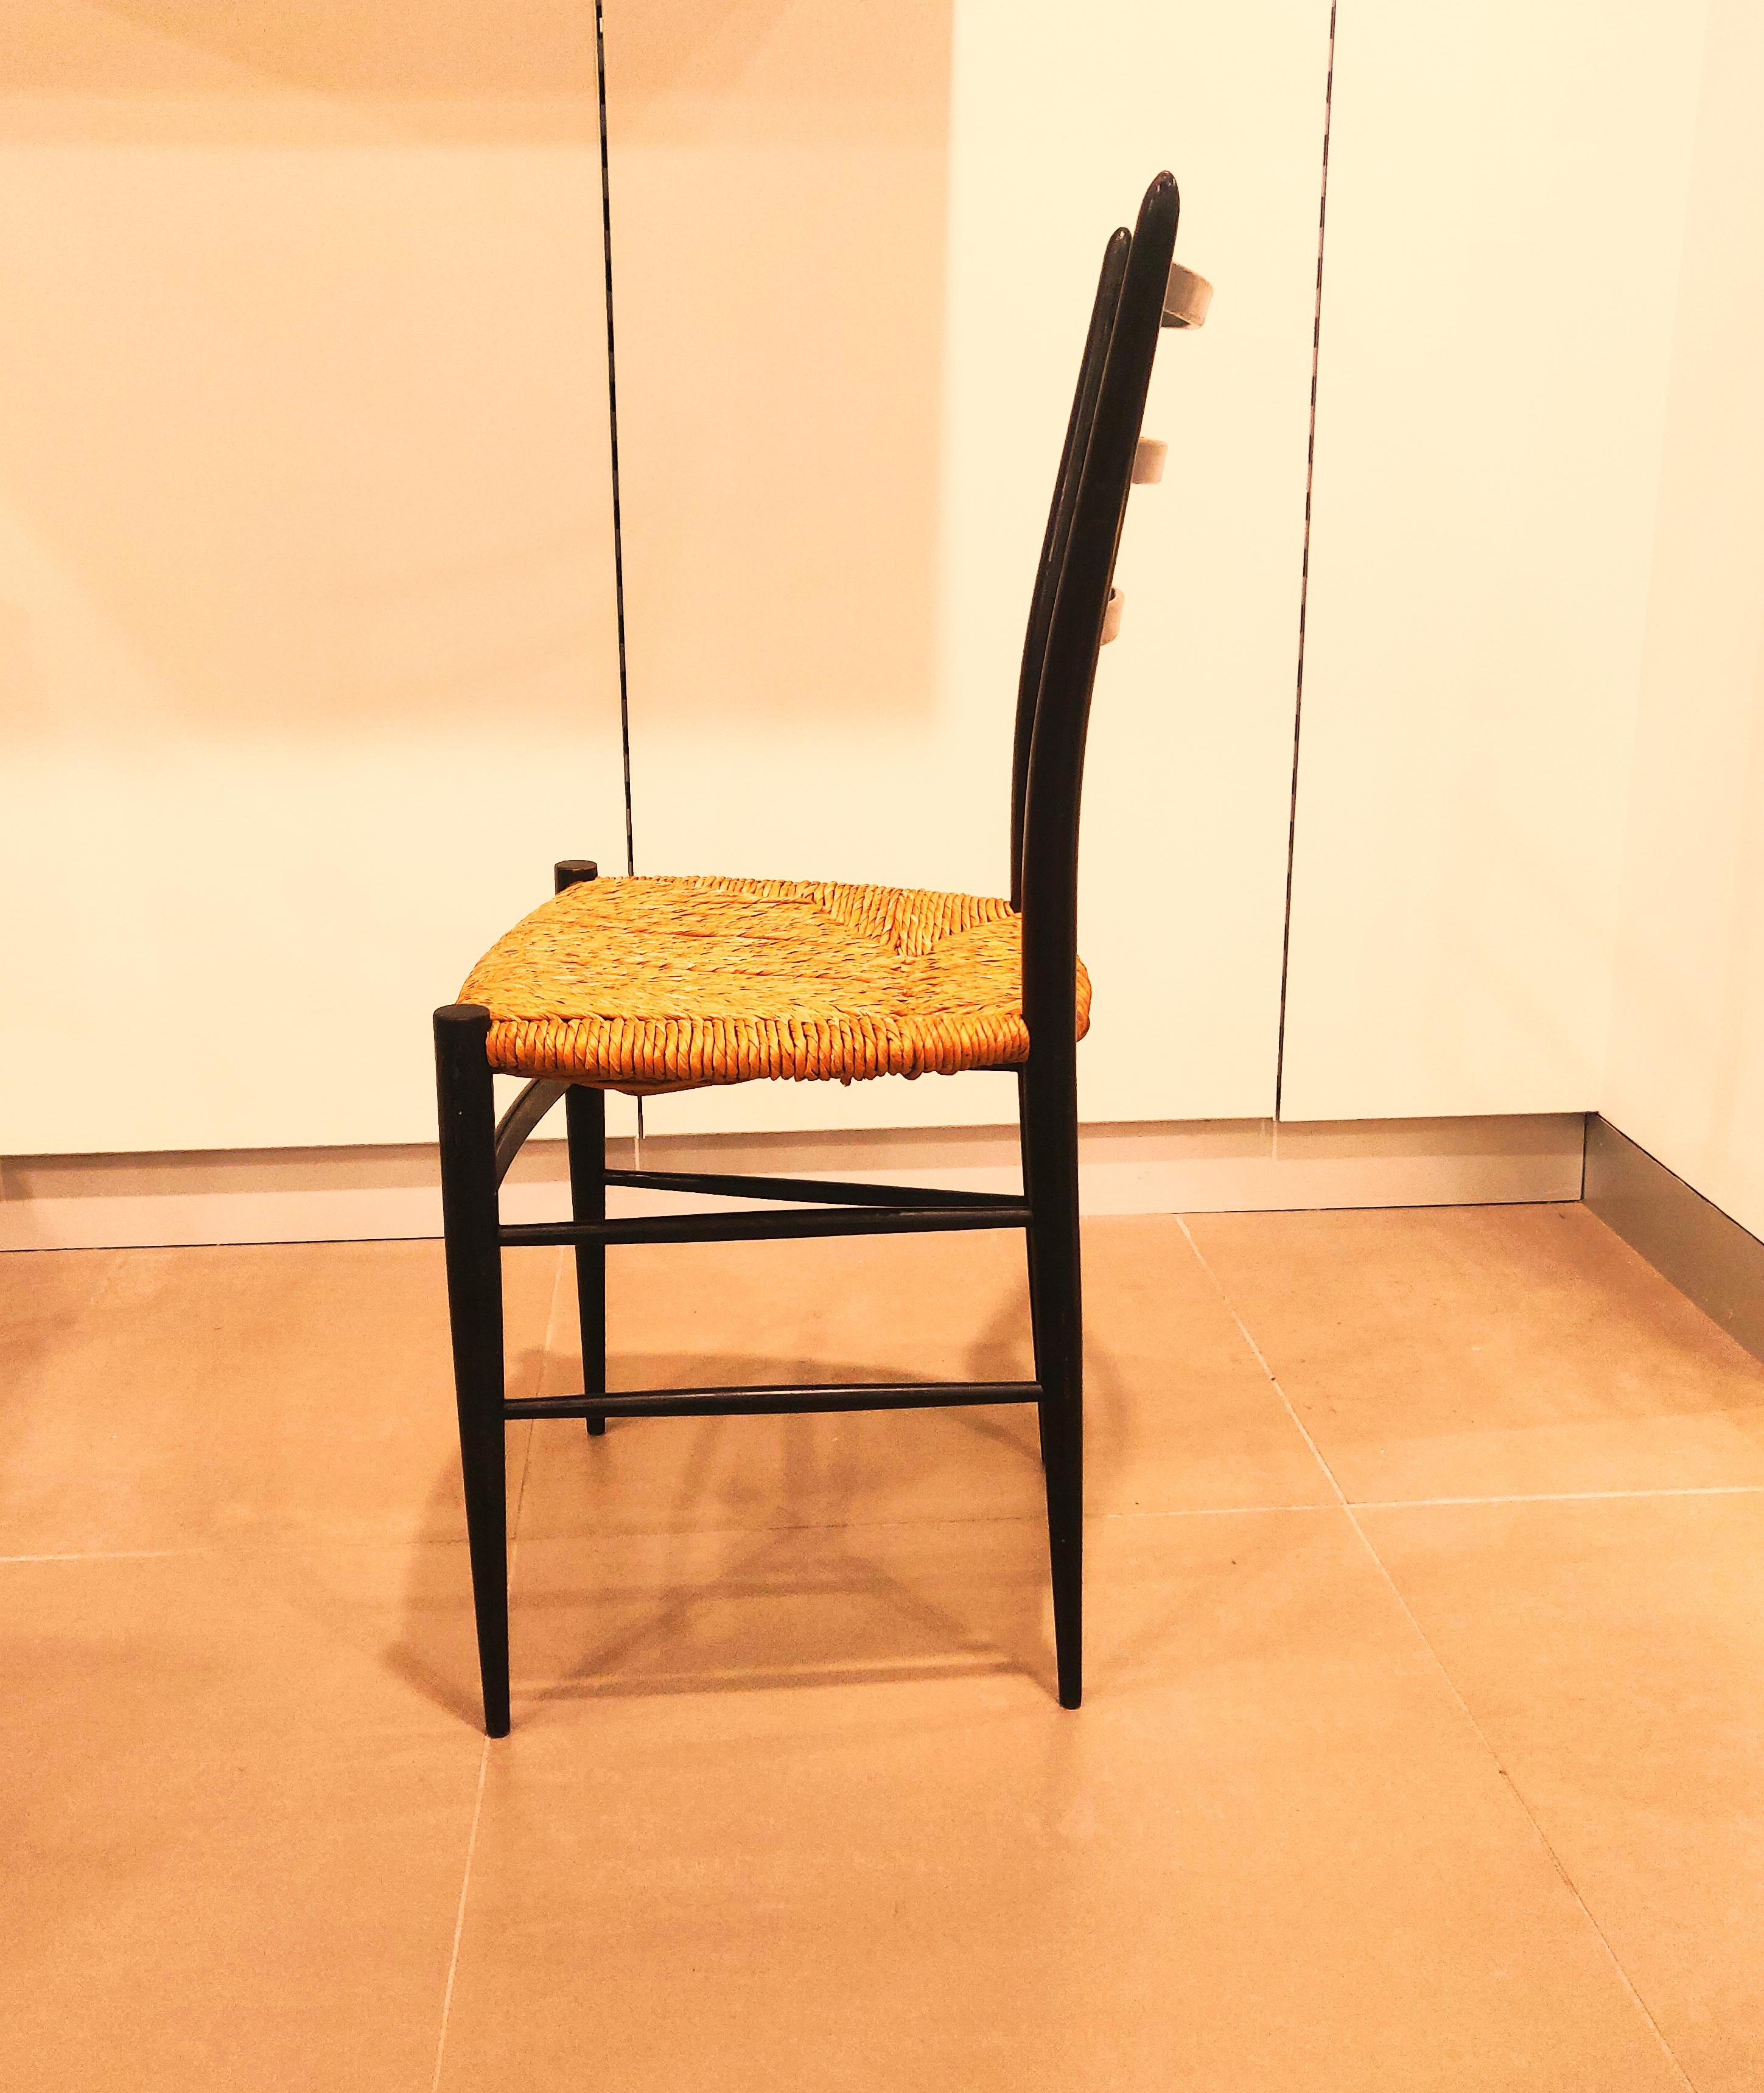 Sehr eleganter und minimalistischer Spinetto Chiavari Stuhl mit feinem schwarzem ebonisiertem Gestell und Sitz aus Korbgeflecht, hergestellt in den 1960er Jahren von Chiavari, Italien. Das leichte Gestell ist trotz seines zerbrechlichen Aussehens